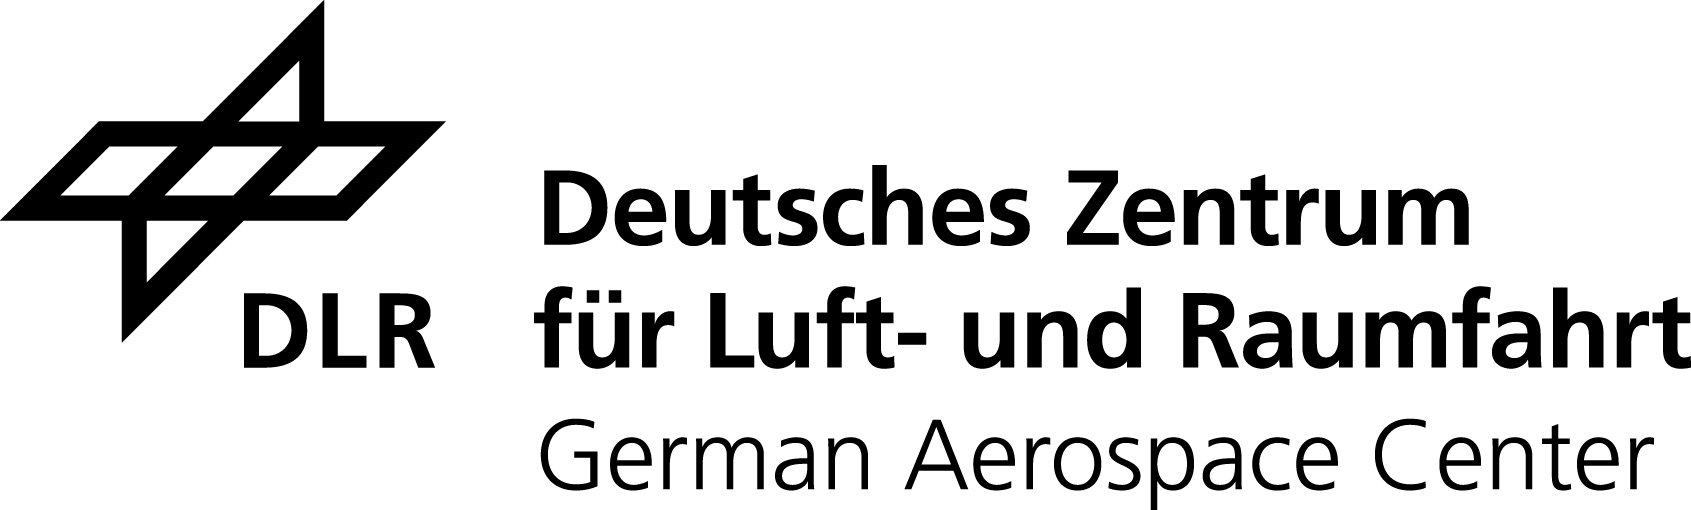 DLR Logo engl schwarz